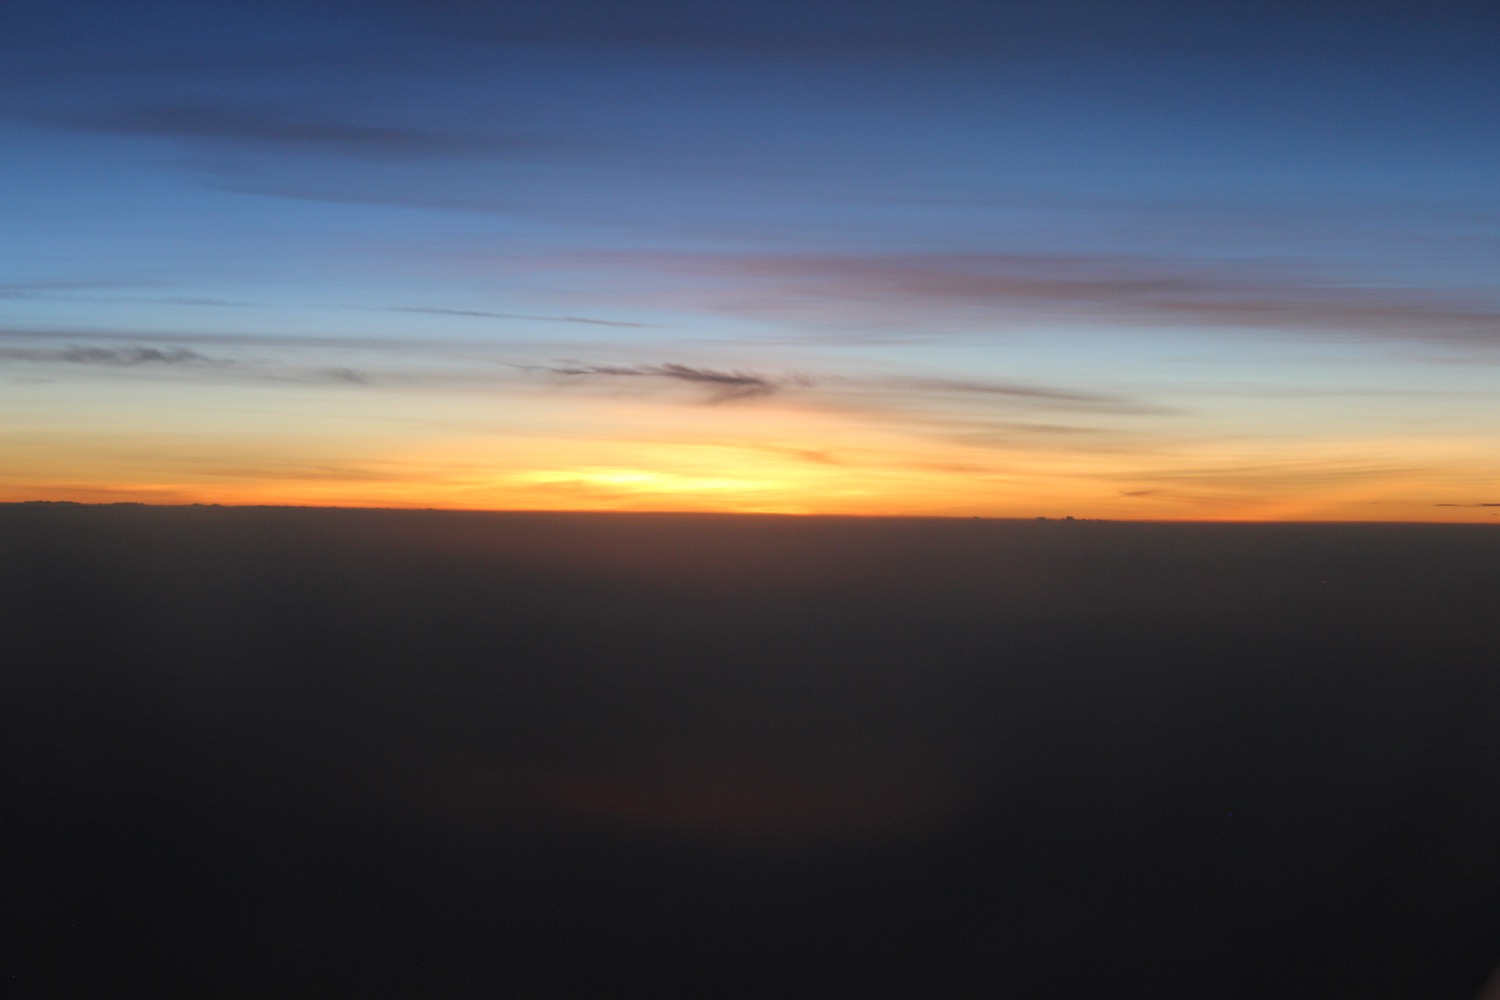 a sunset over a cloud